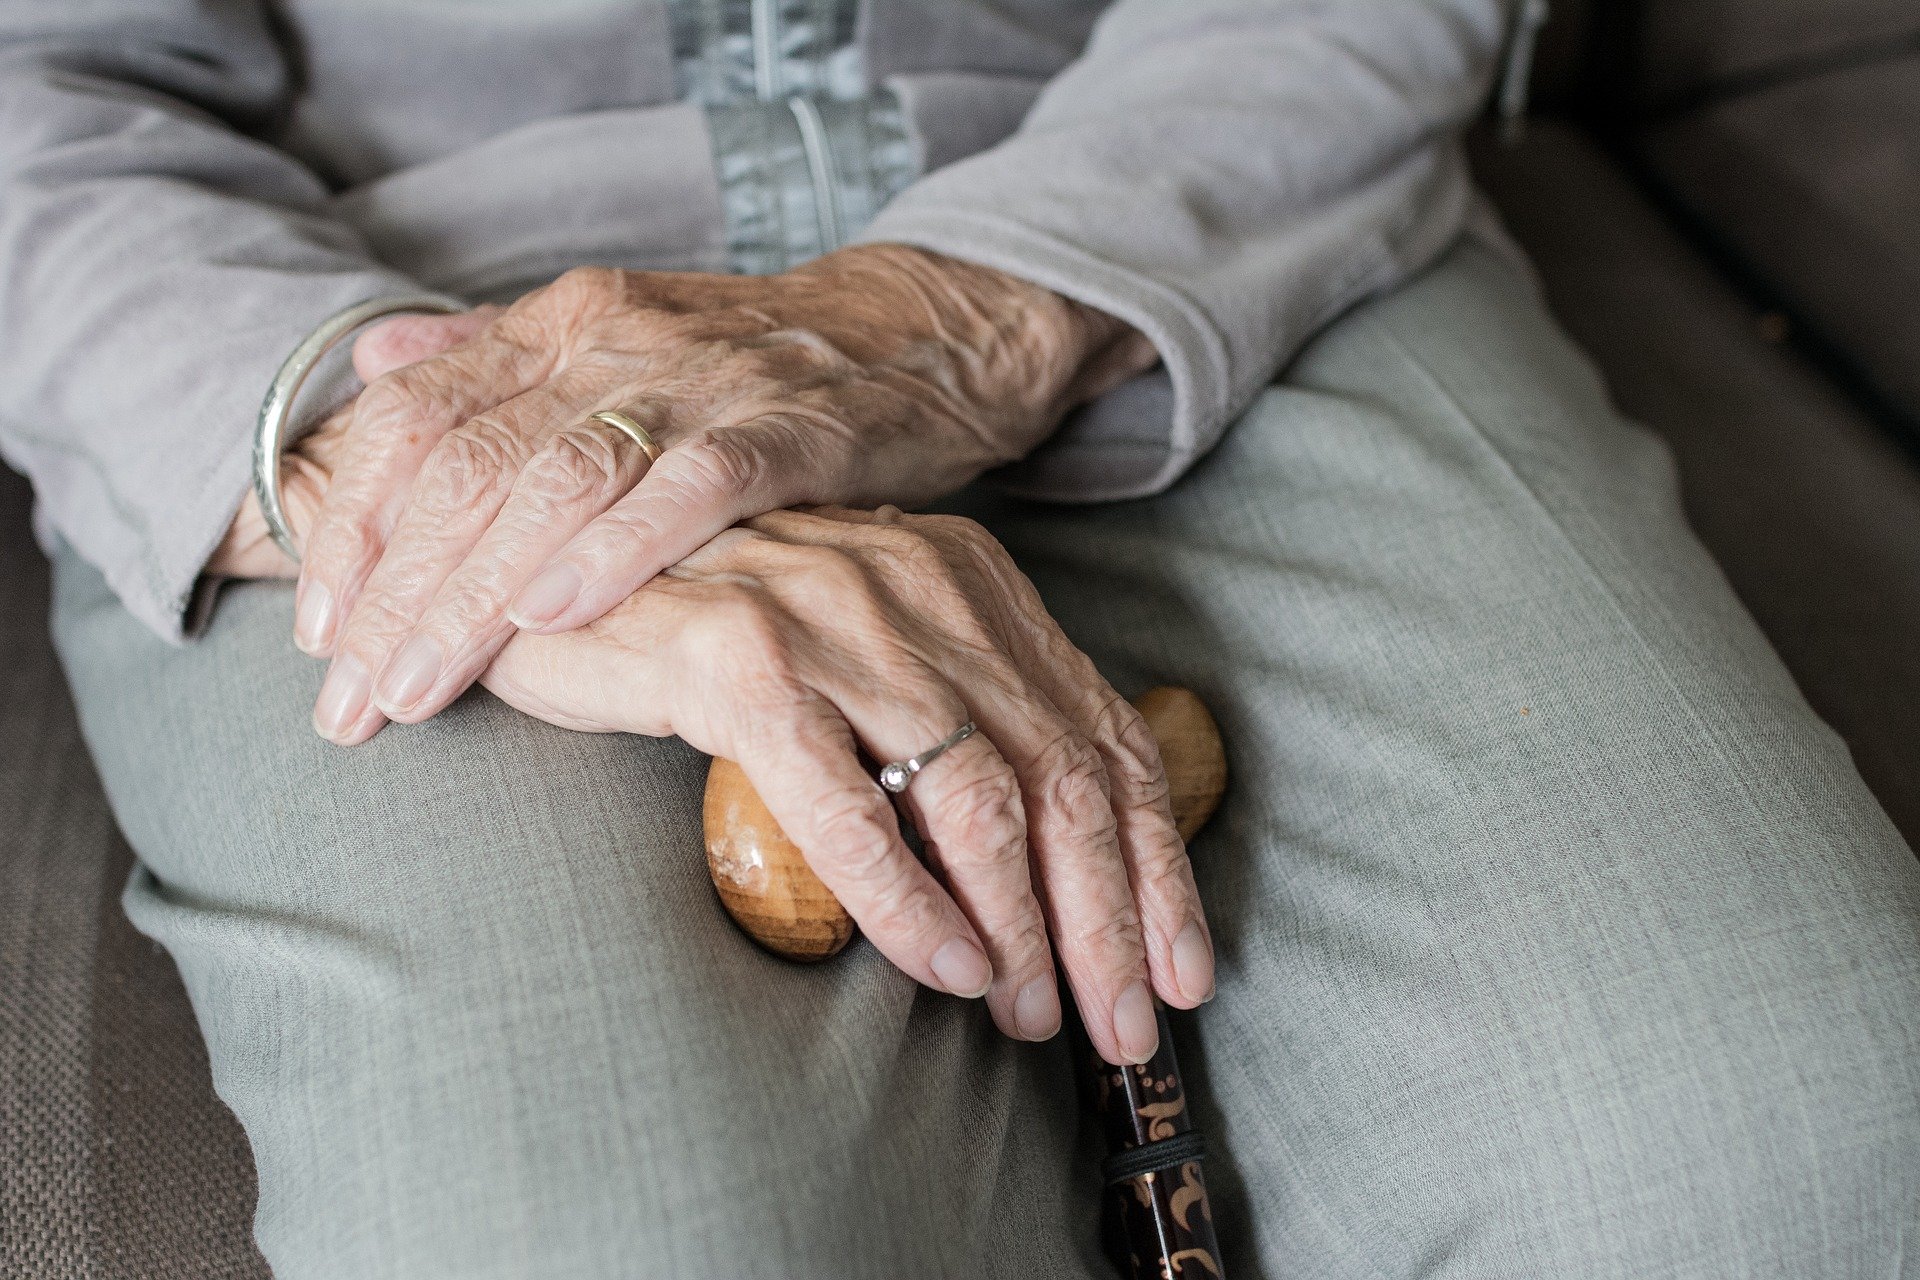 Nasce il progetto “A casa mia”: l’Unione dei Comuni del Casentino investe 400 mila euro per potenziare l’assistenza domiciliare alle persone anziane